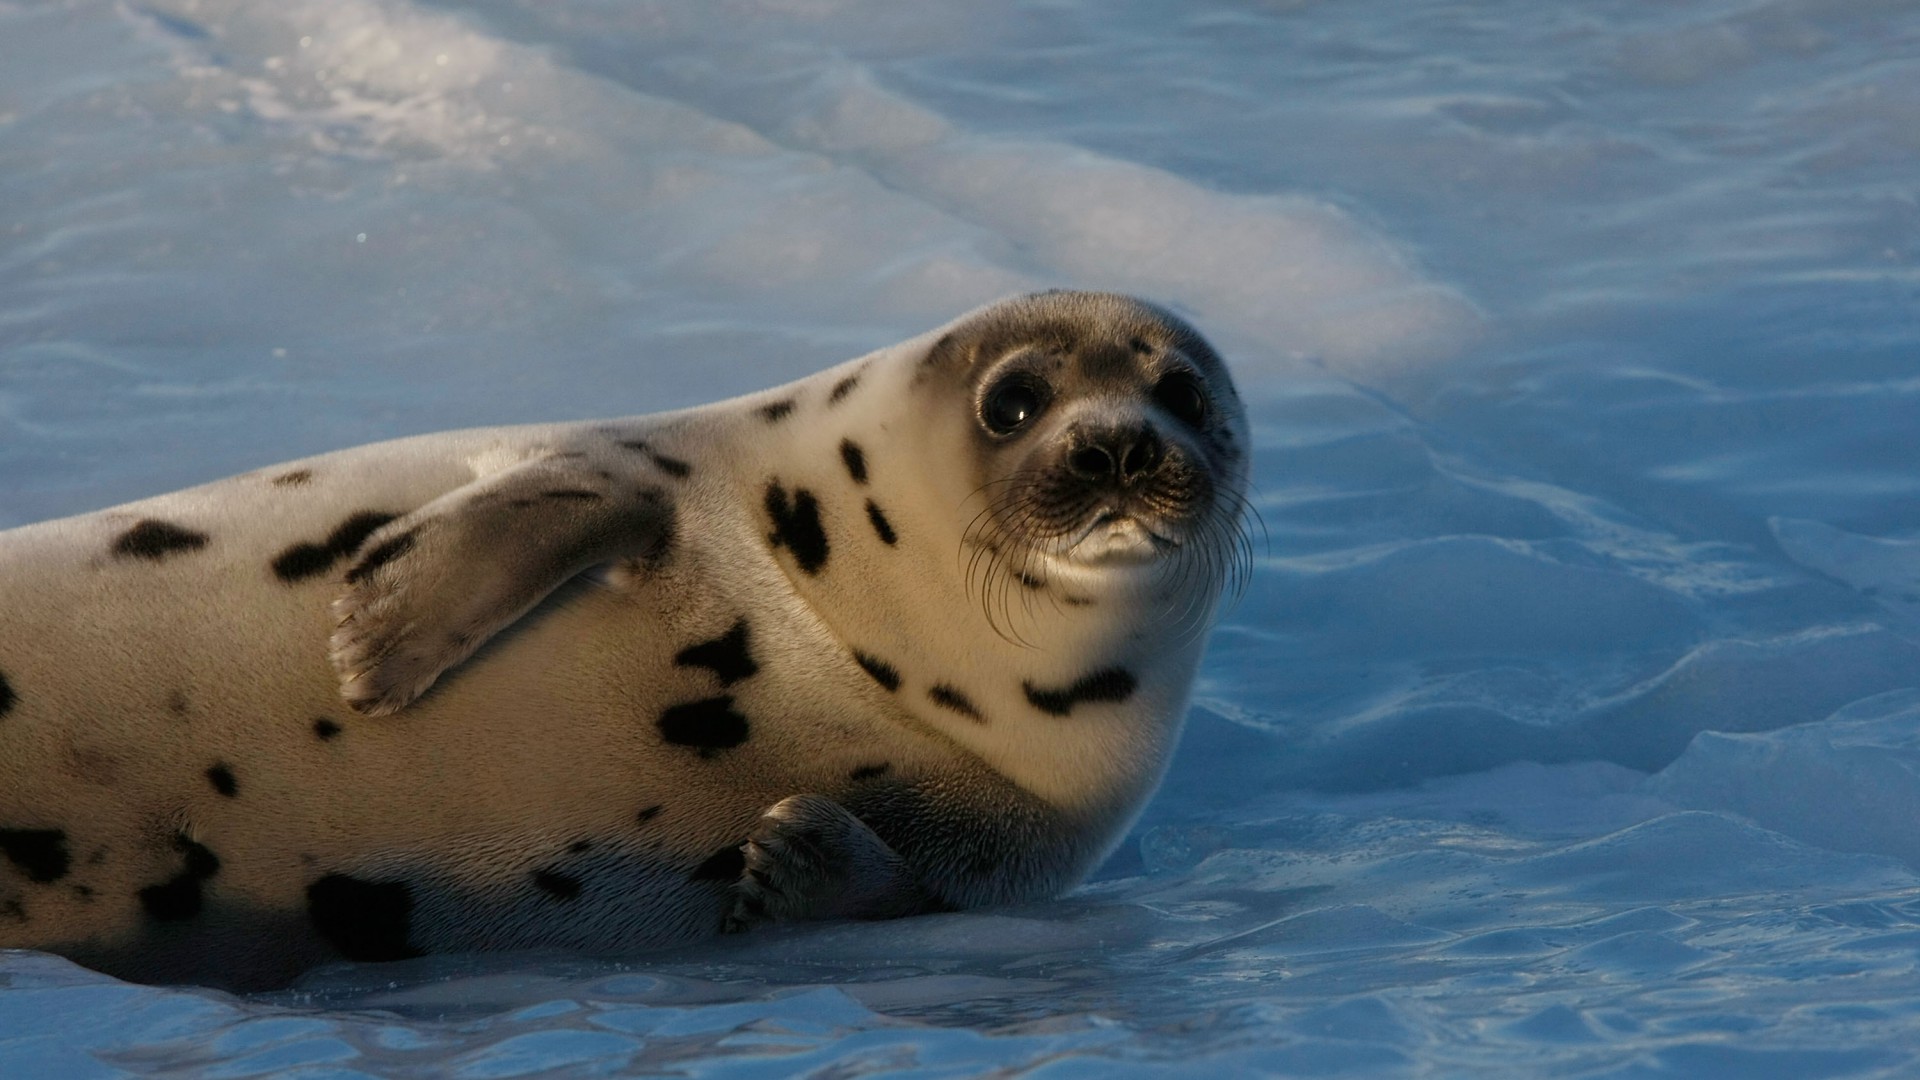 Seal pup, Atlantic Ocean, snow, funny (horizontal)